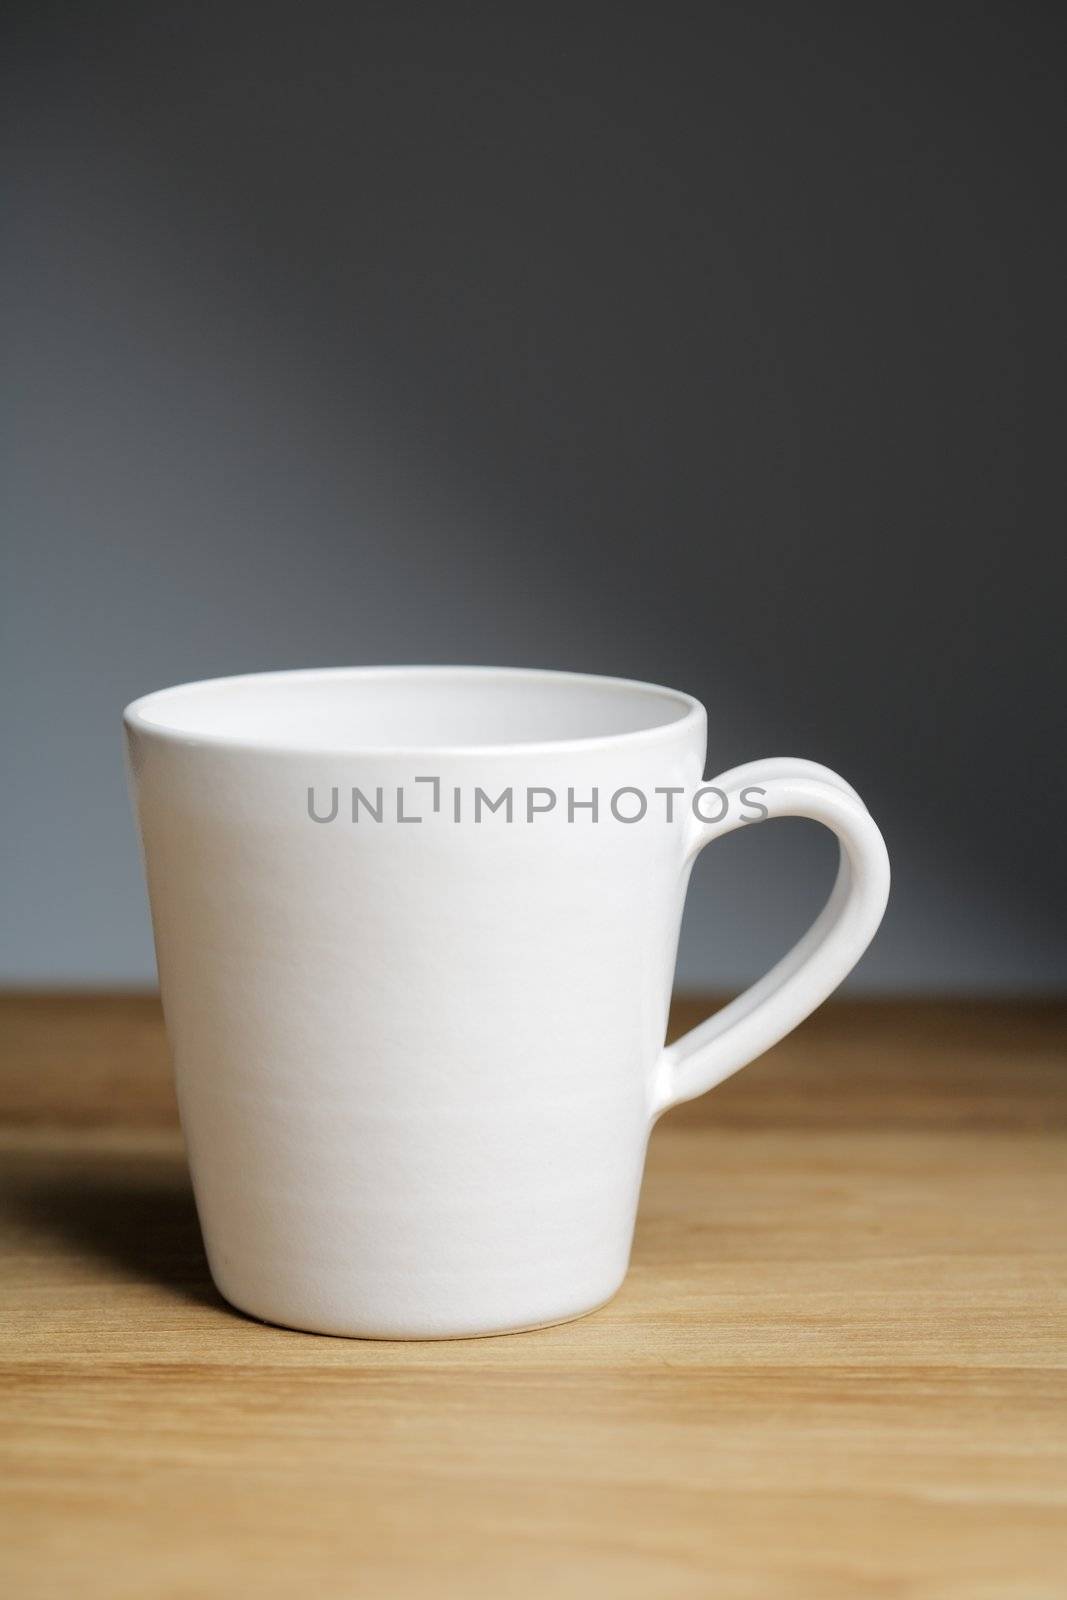 A Hand-made ceramic porcelain coffee mug.